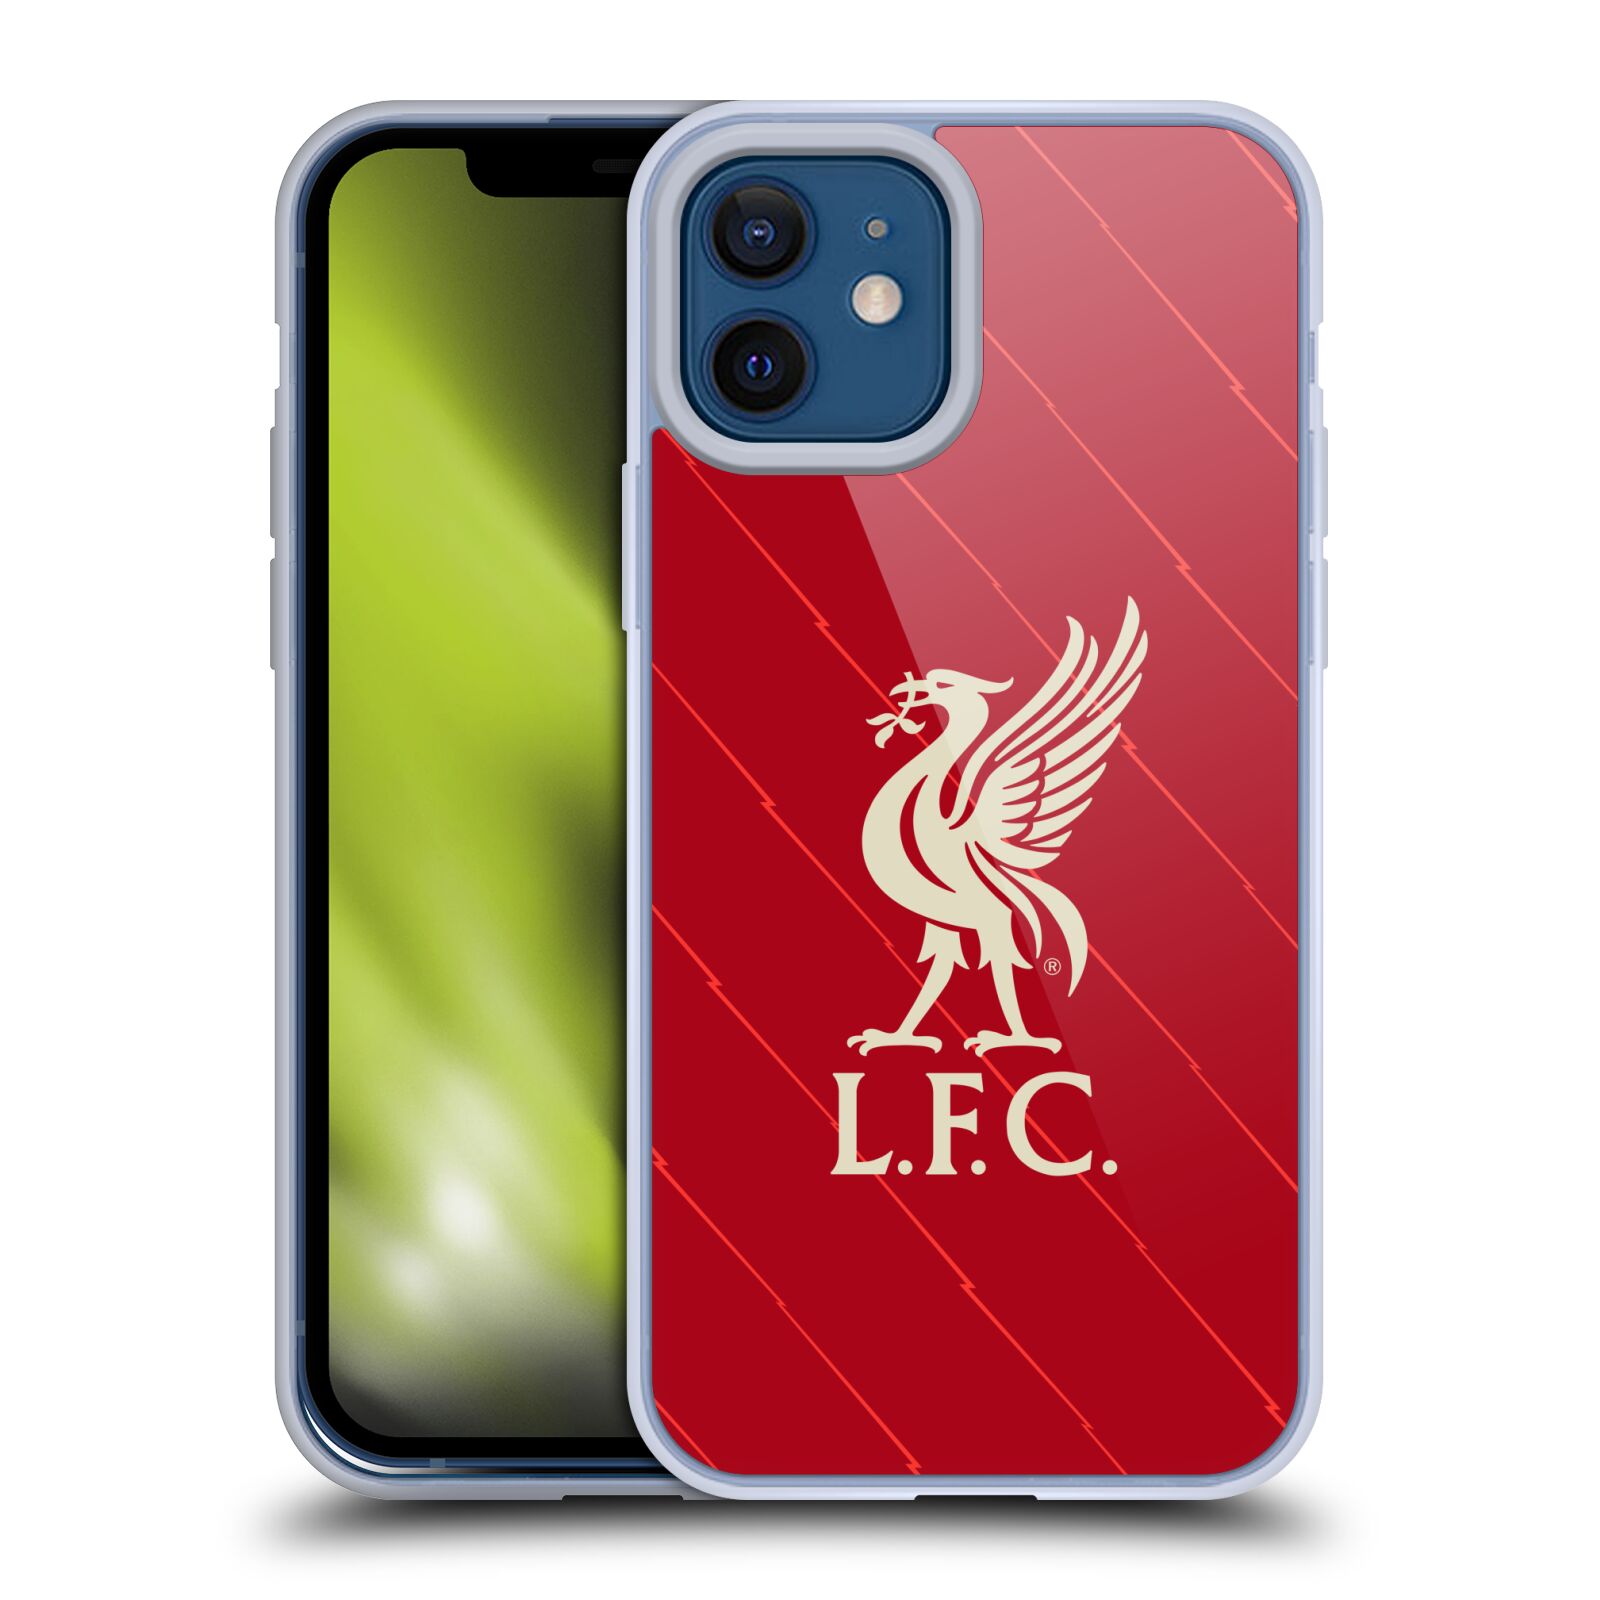 Liverpool F.C iPhone X Aluminium Case Official Merchandise 